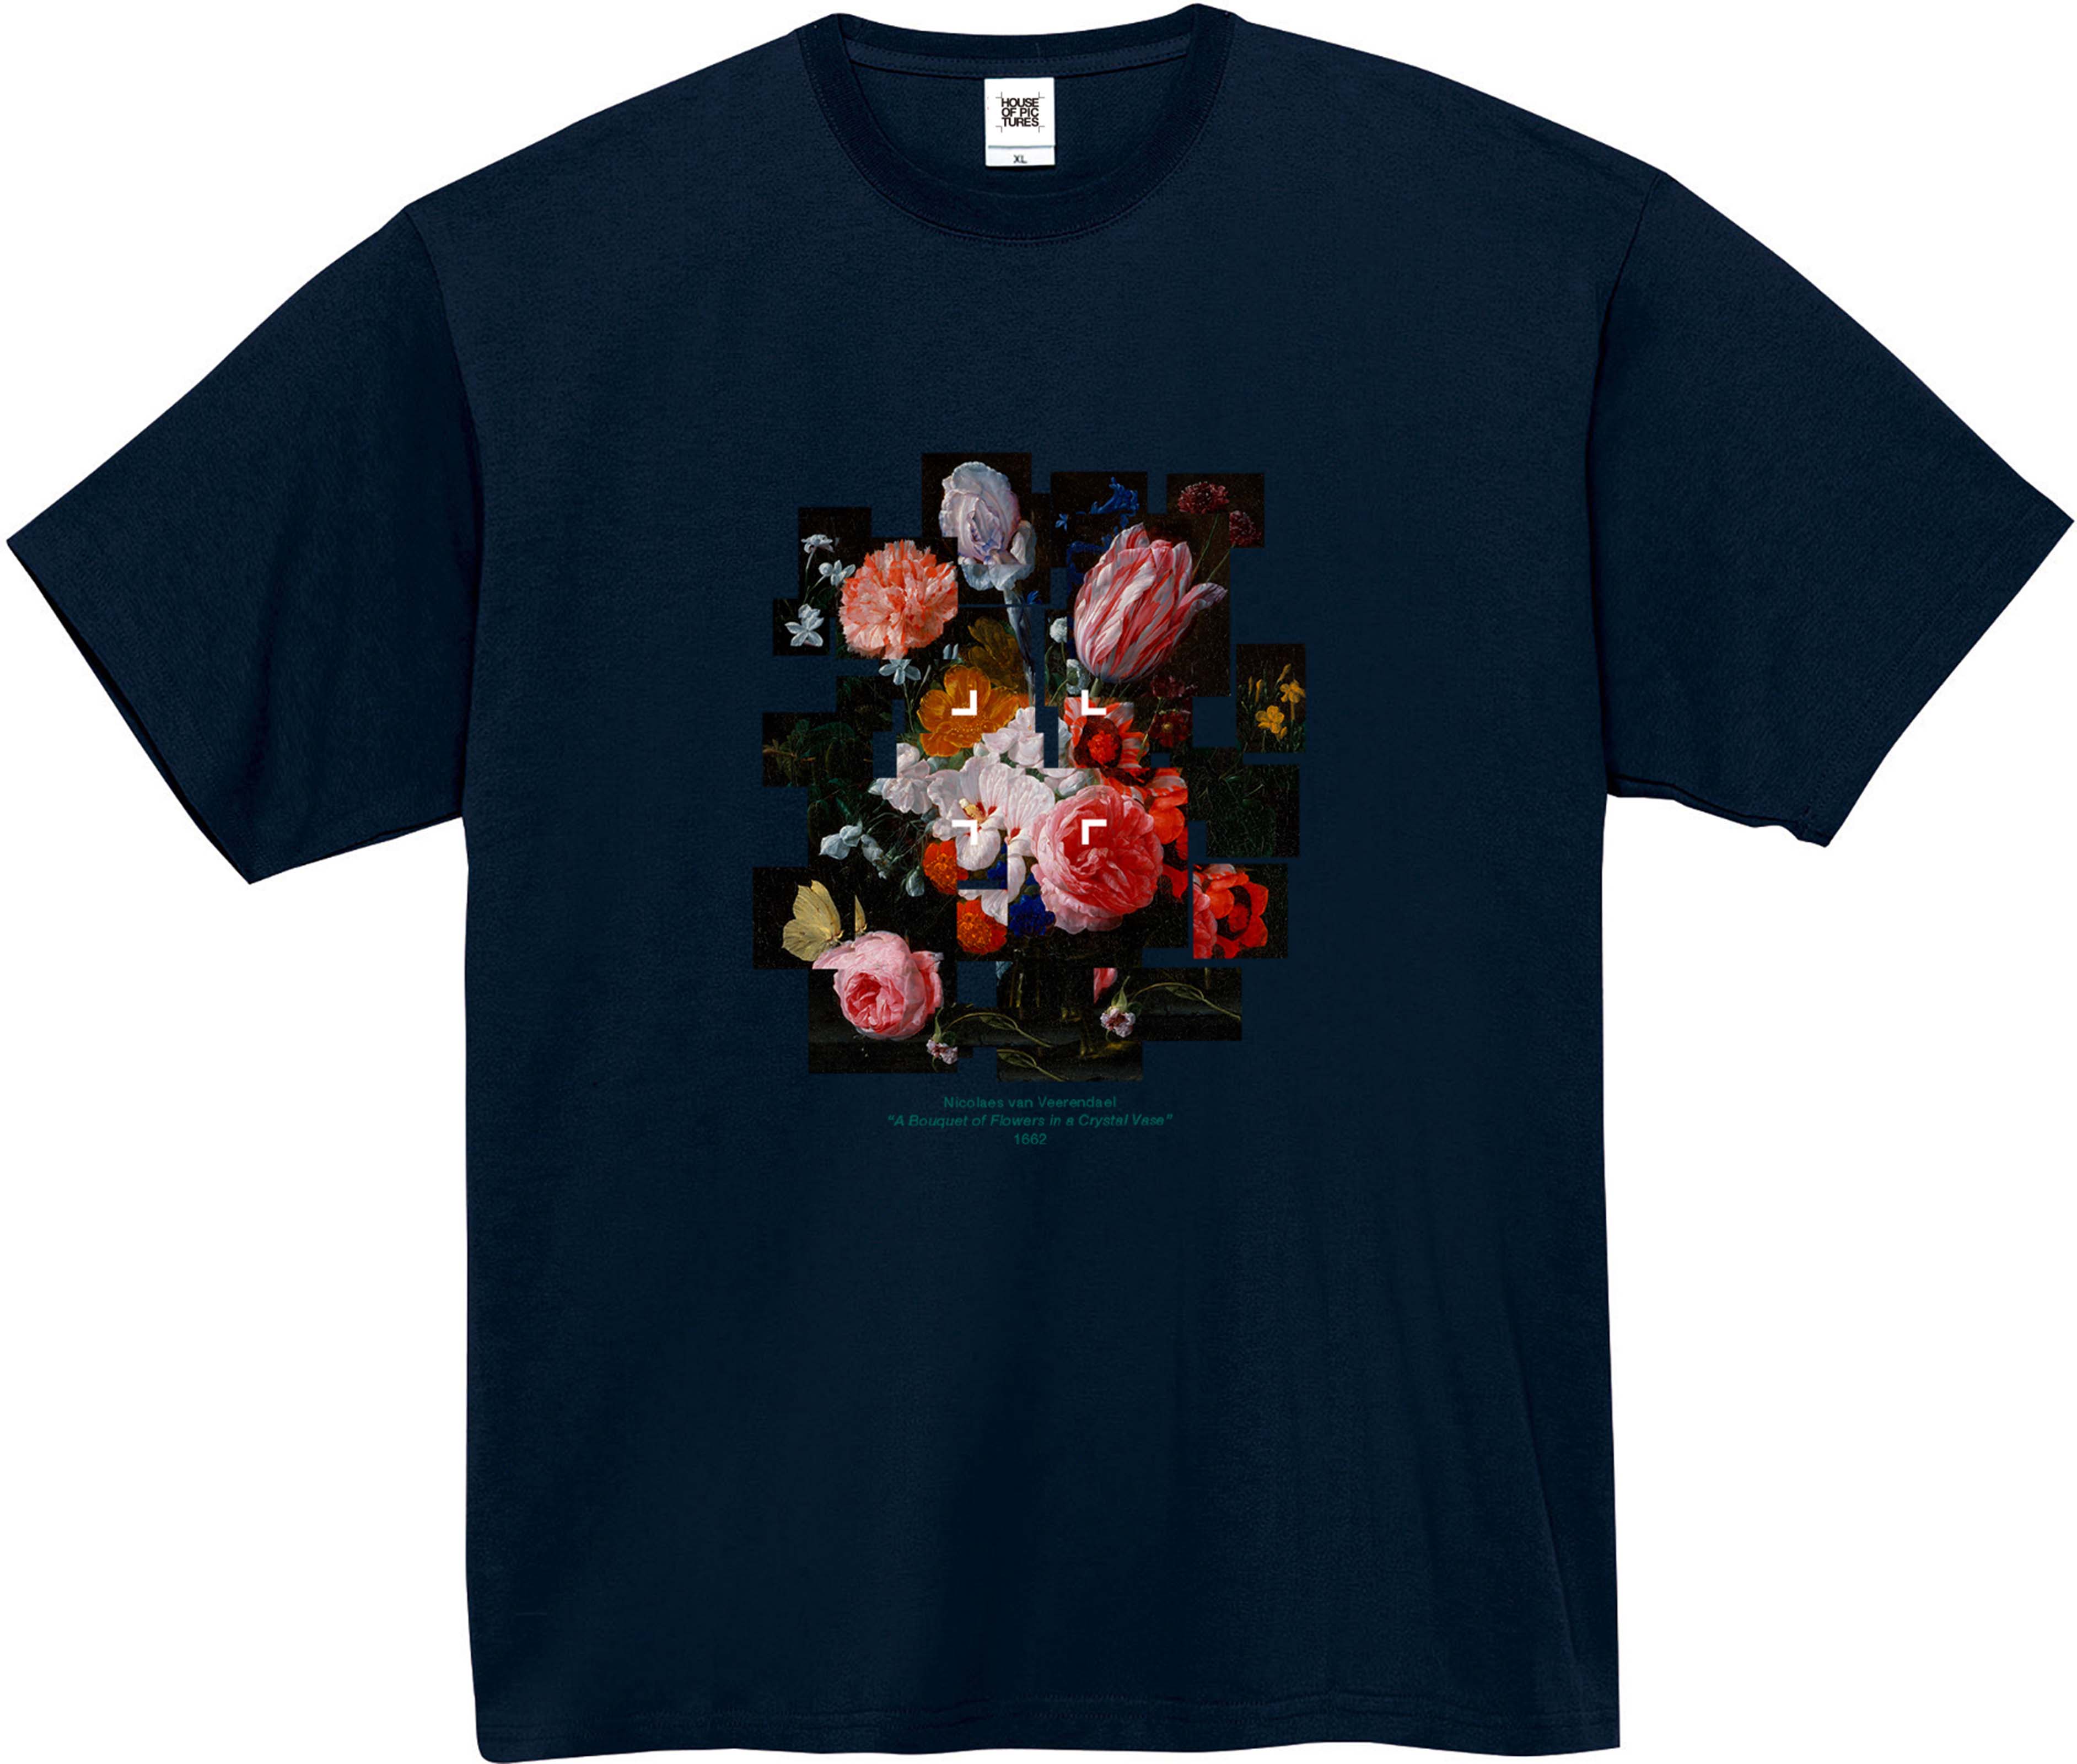 ニコラエス・ファン・ヴェレンダール-クリスタルの花瓶に咲く花束 / 半袖クルーネックTシャツ